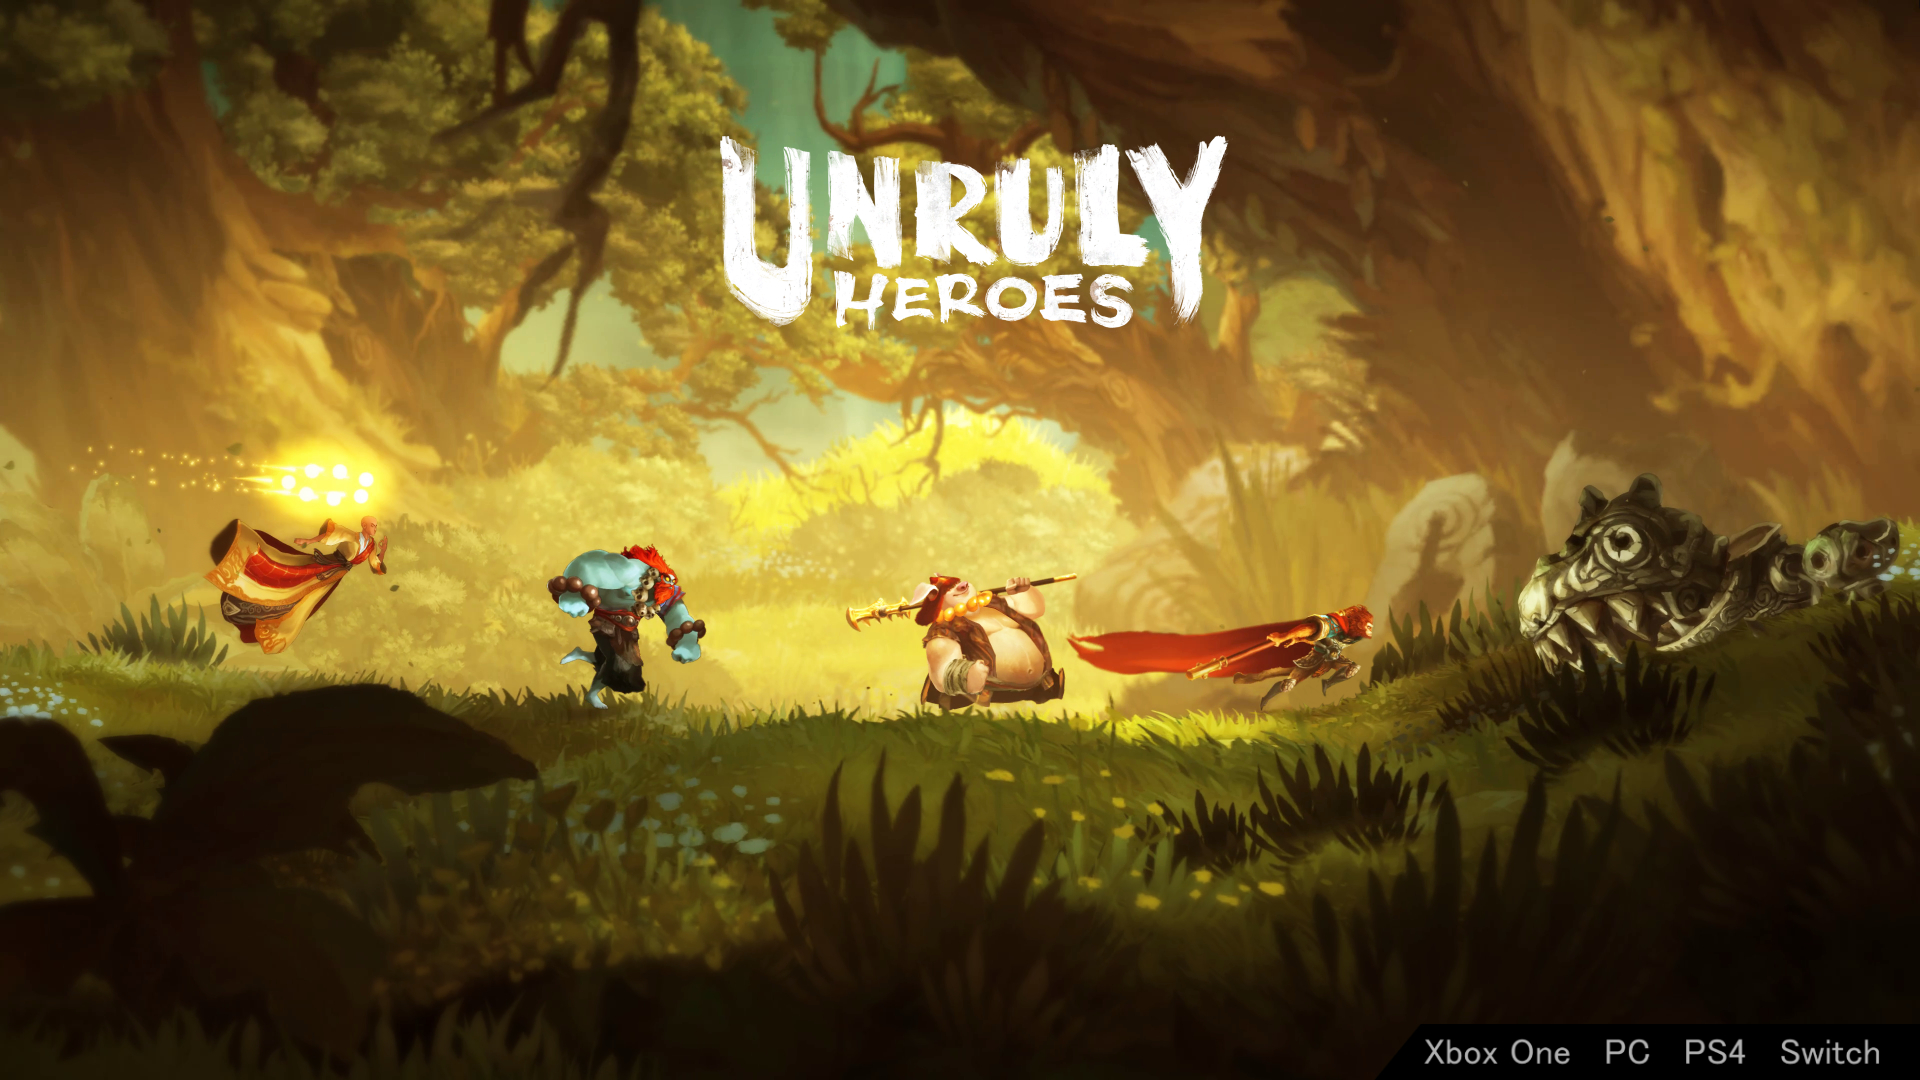 Giới thiệu game Unruly heroes